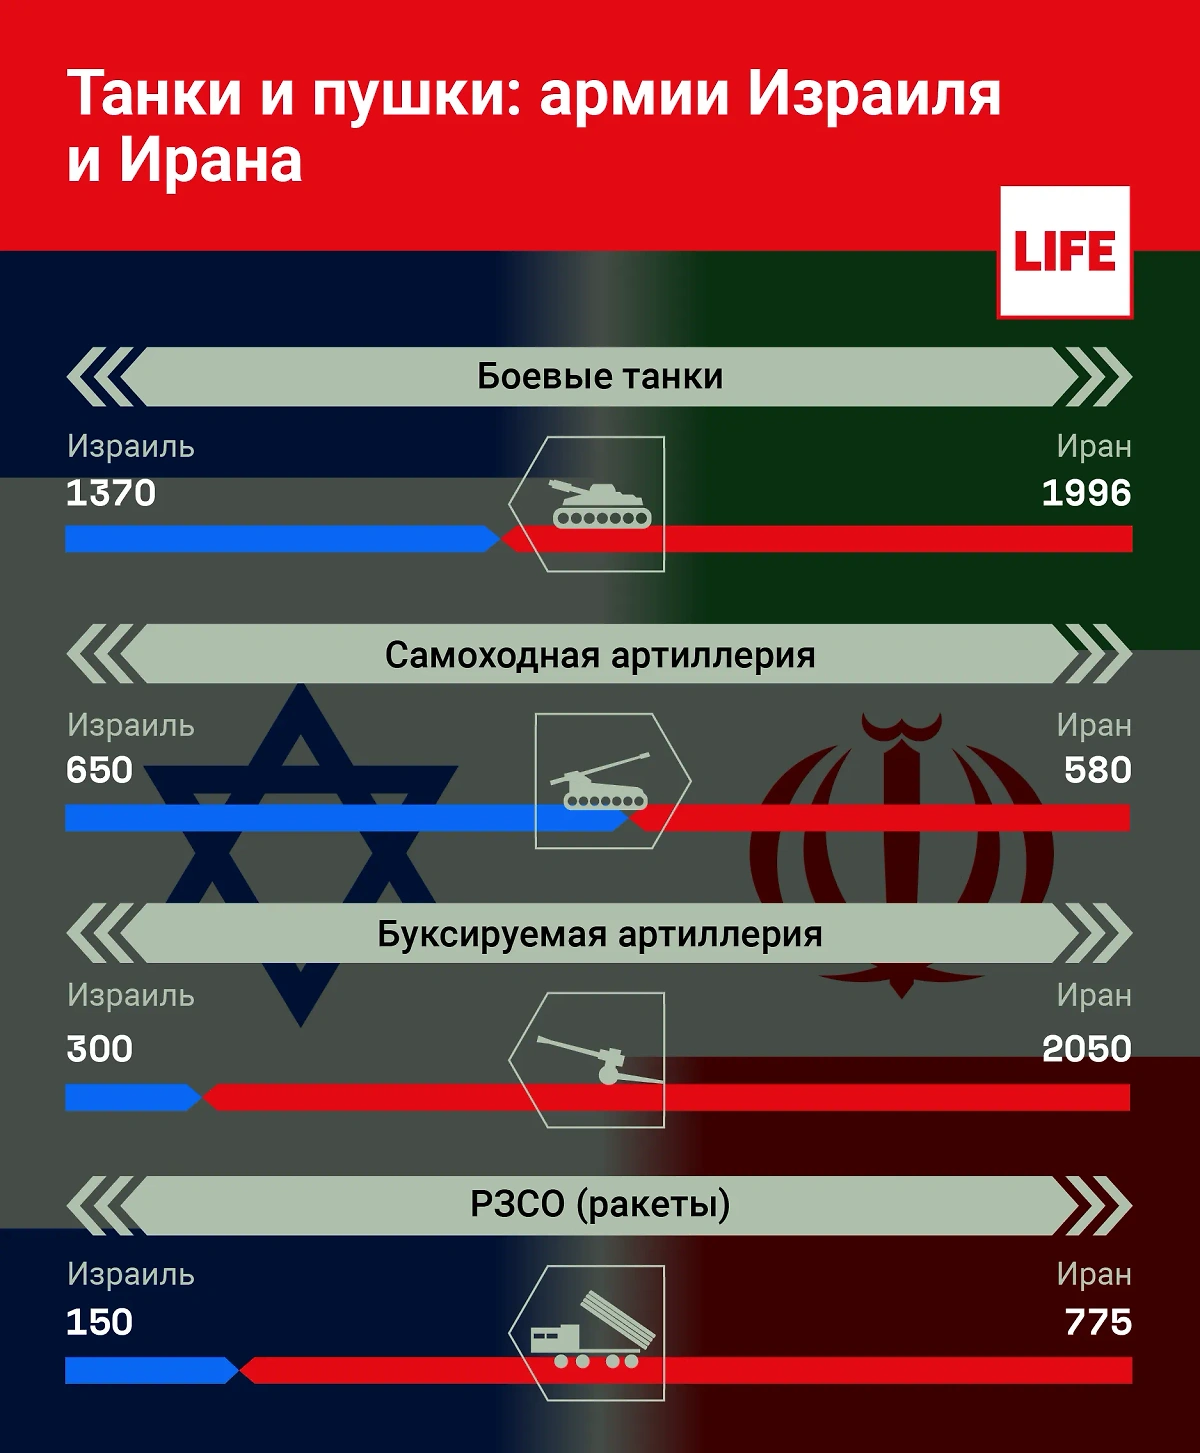 Сравнение танков, пушек армий Израиля и Ирана. Инфографика © Life.ru